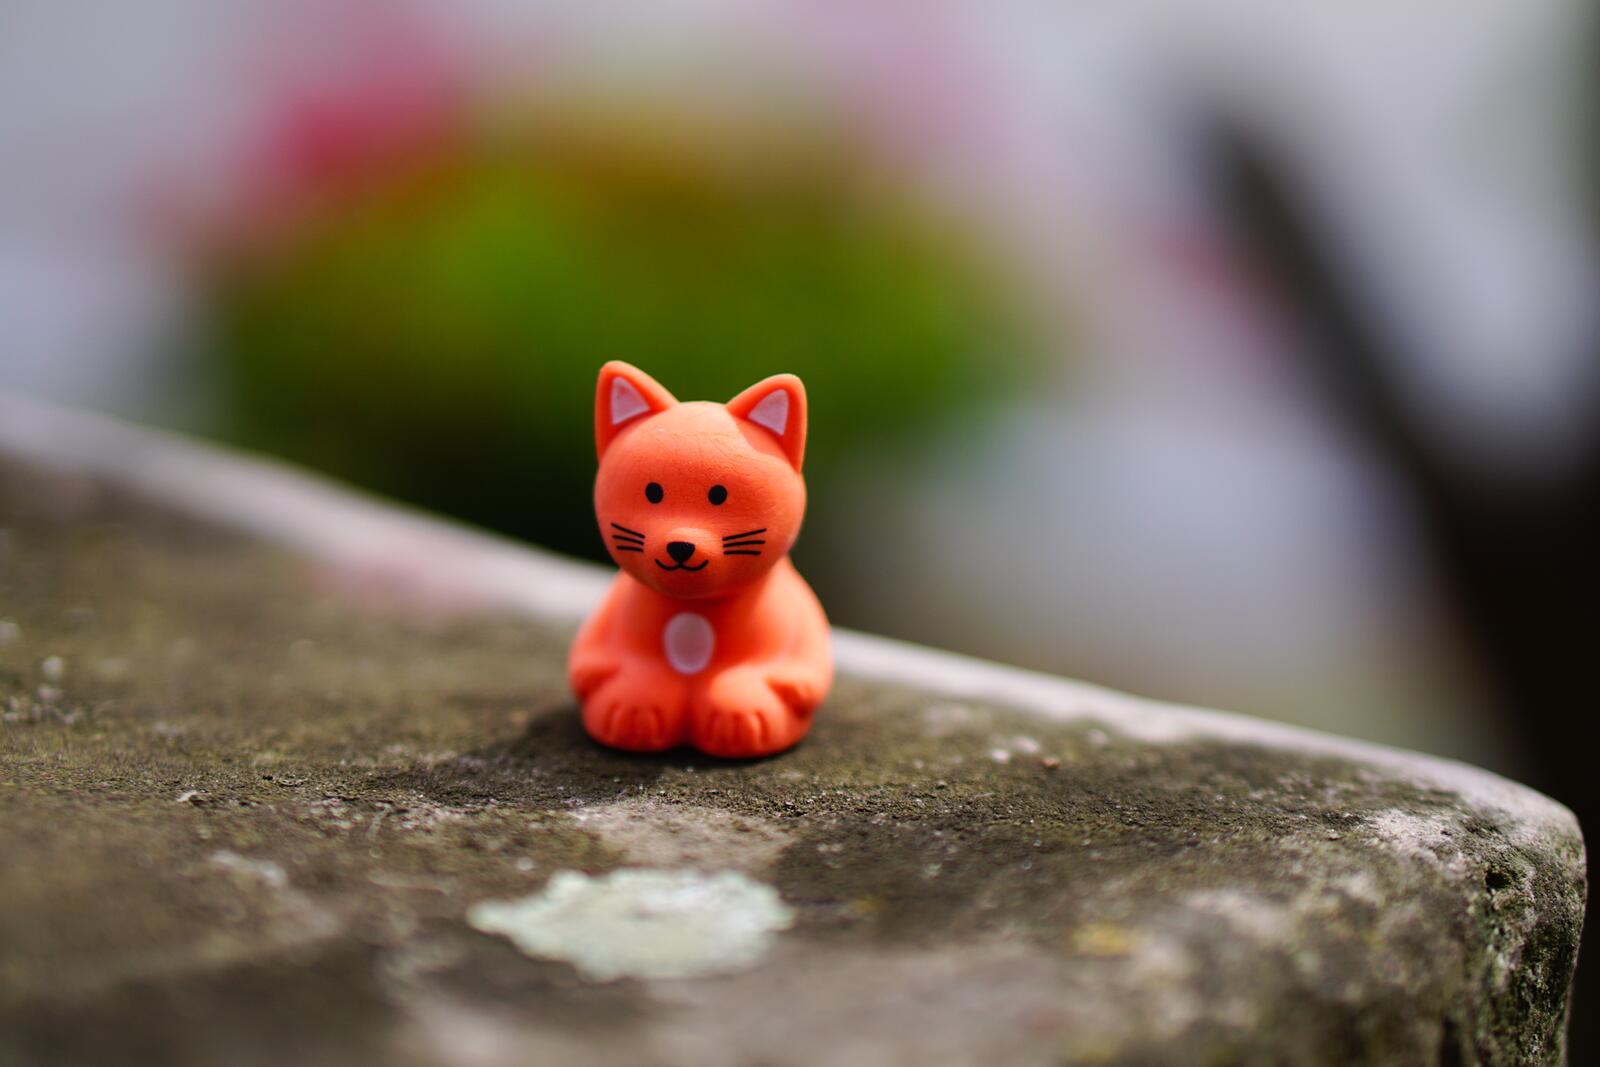 免费照片金达惊喜地发现了一只红狐狸。